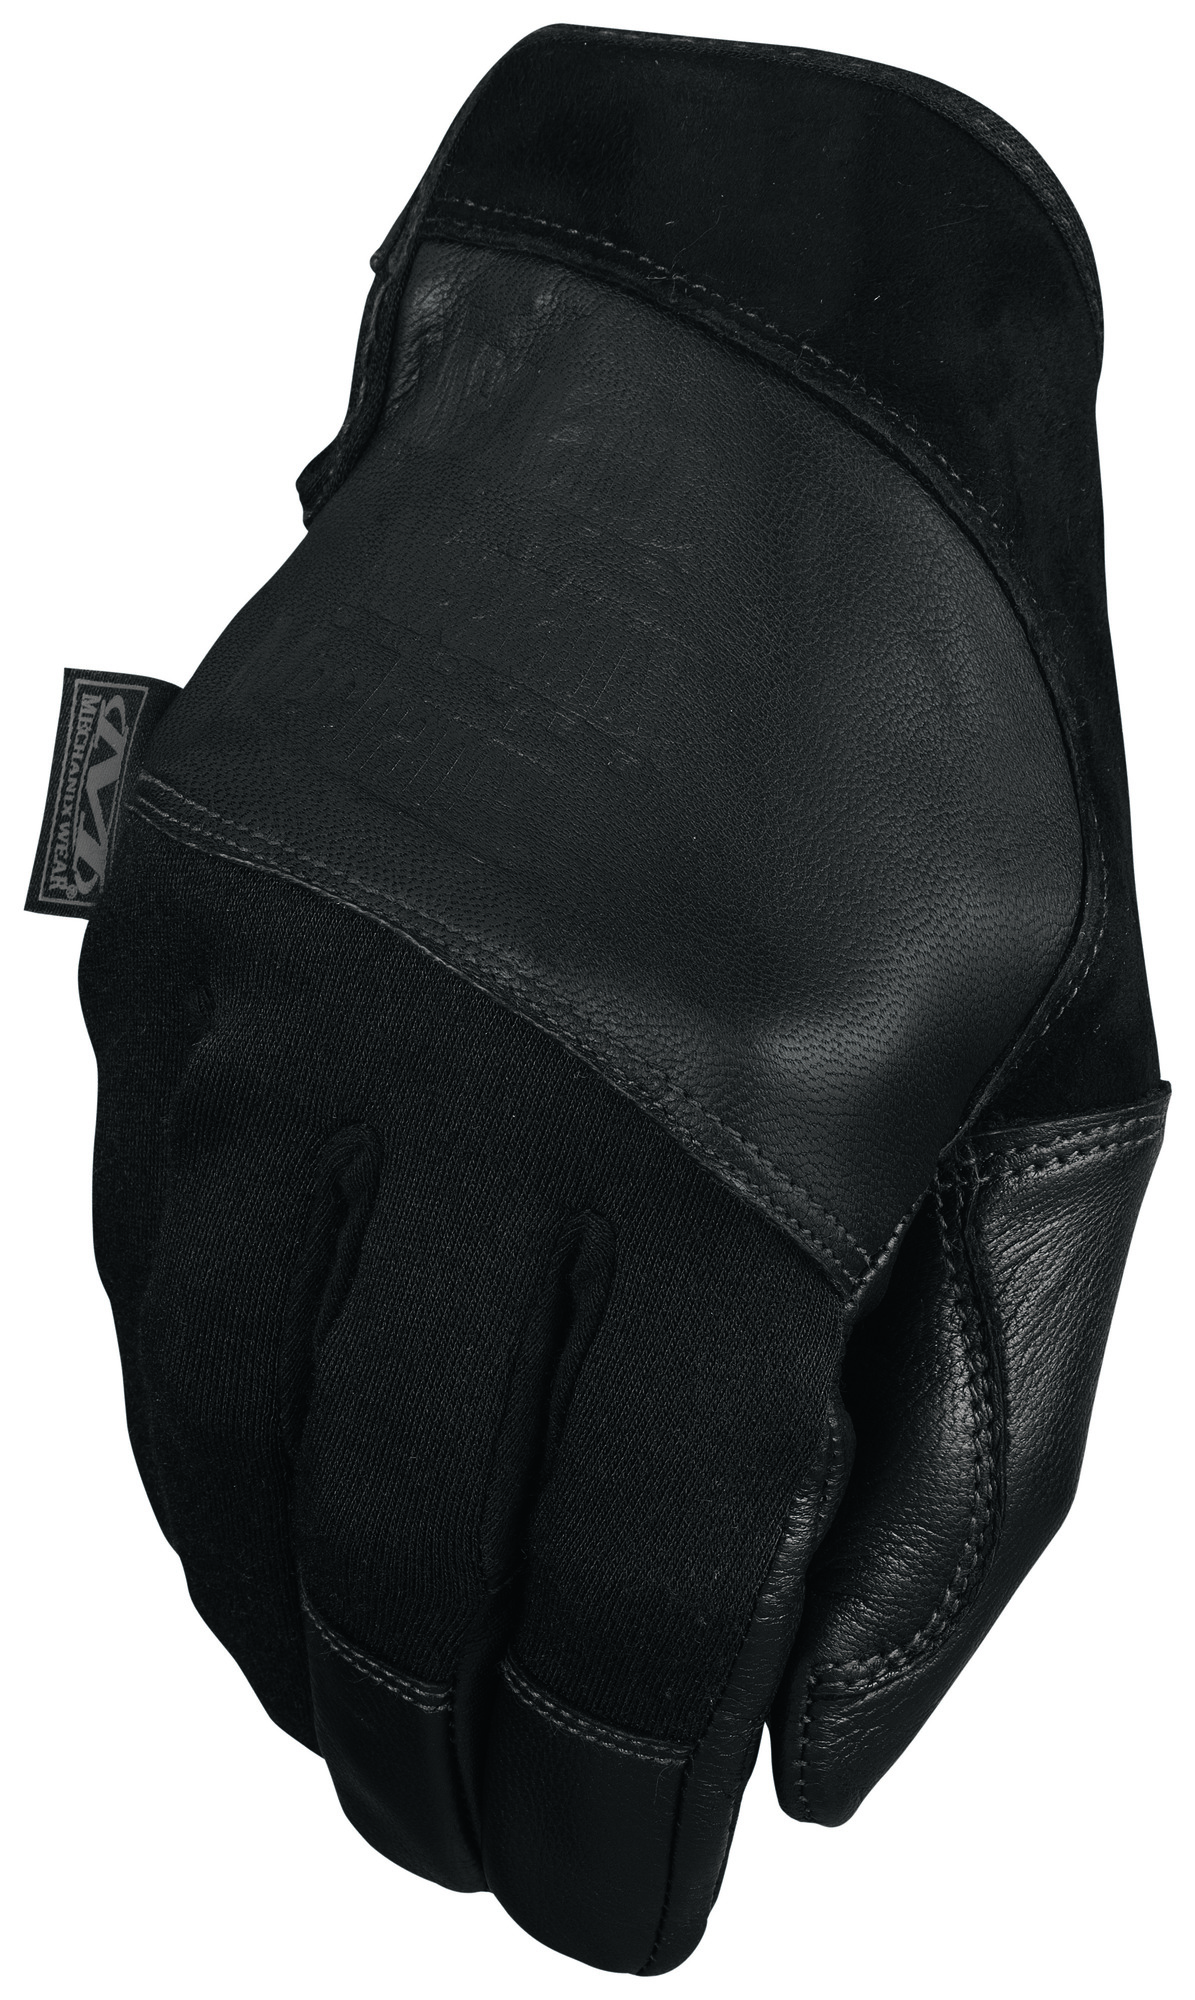 E-shop MECHANIX rukavice Tempest - Covert - čierne L/10